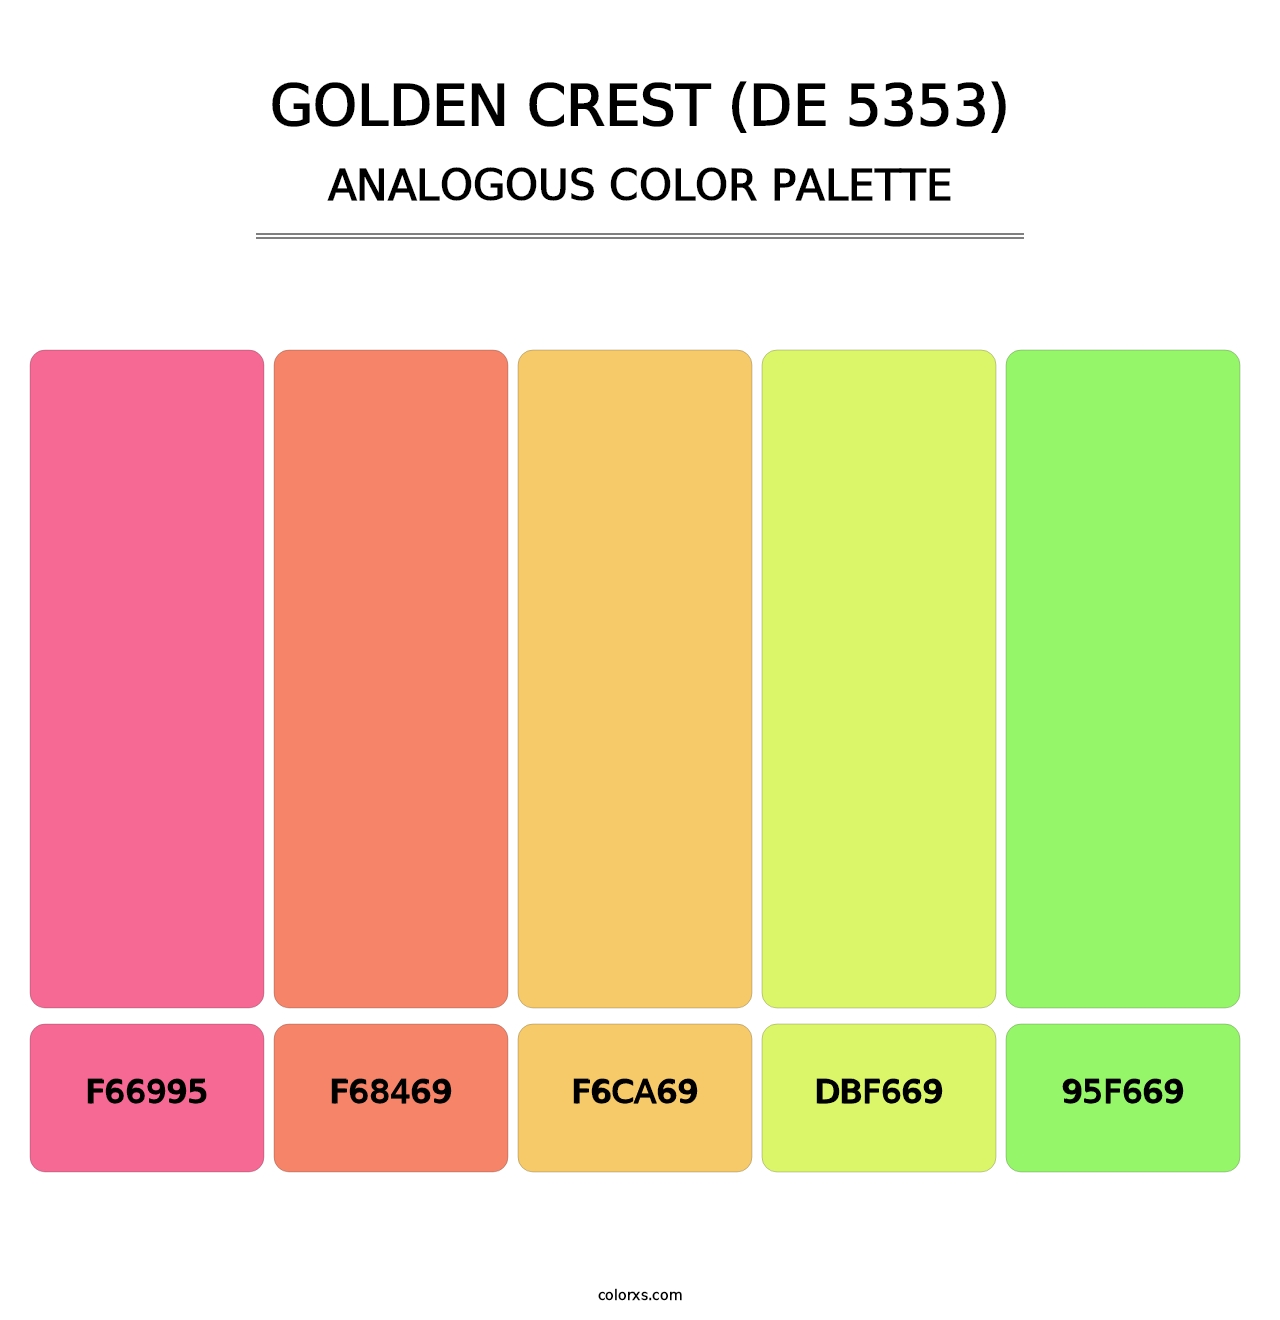 Golden Crest (DE 5353) - Analogous Color Palette